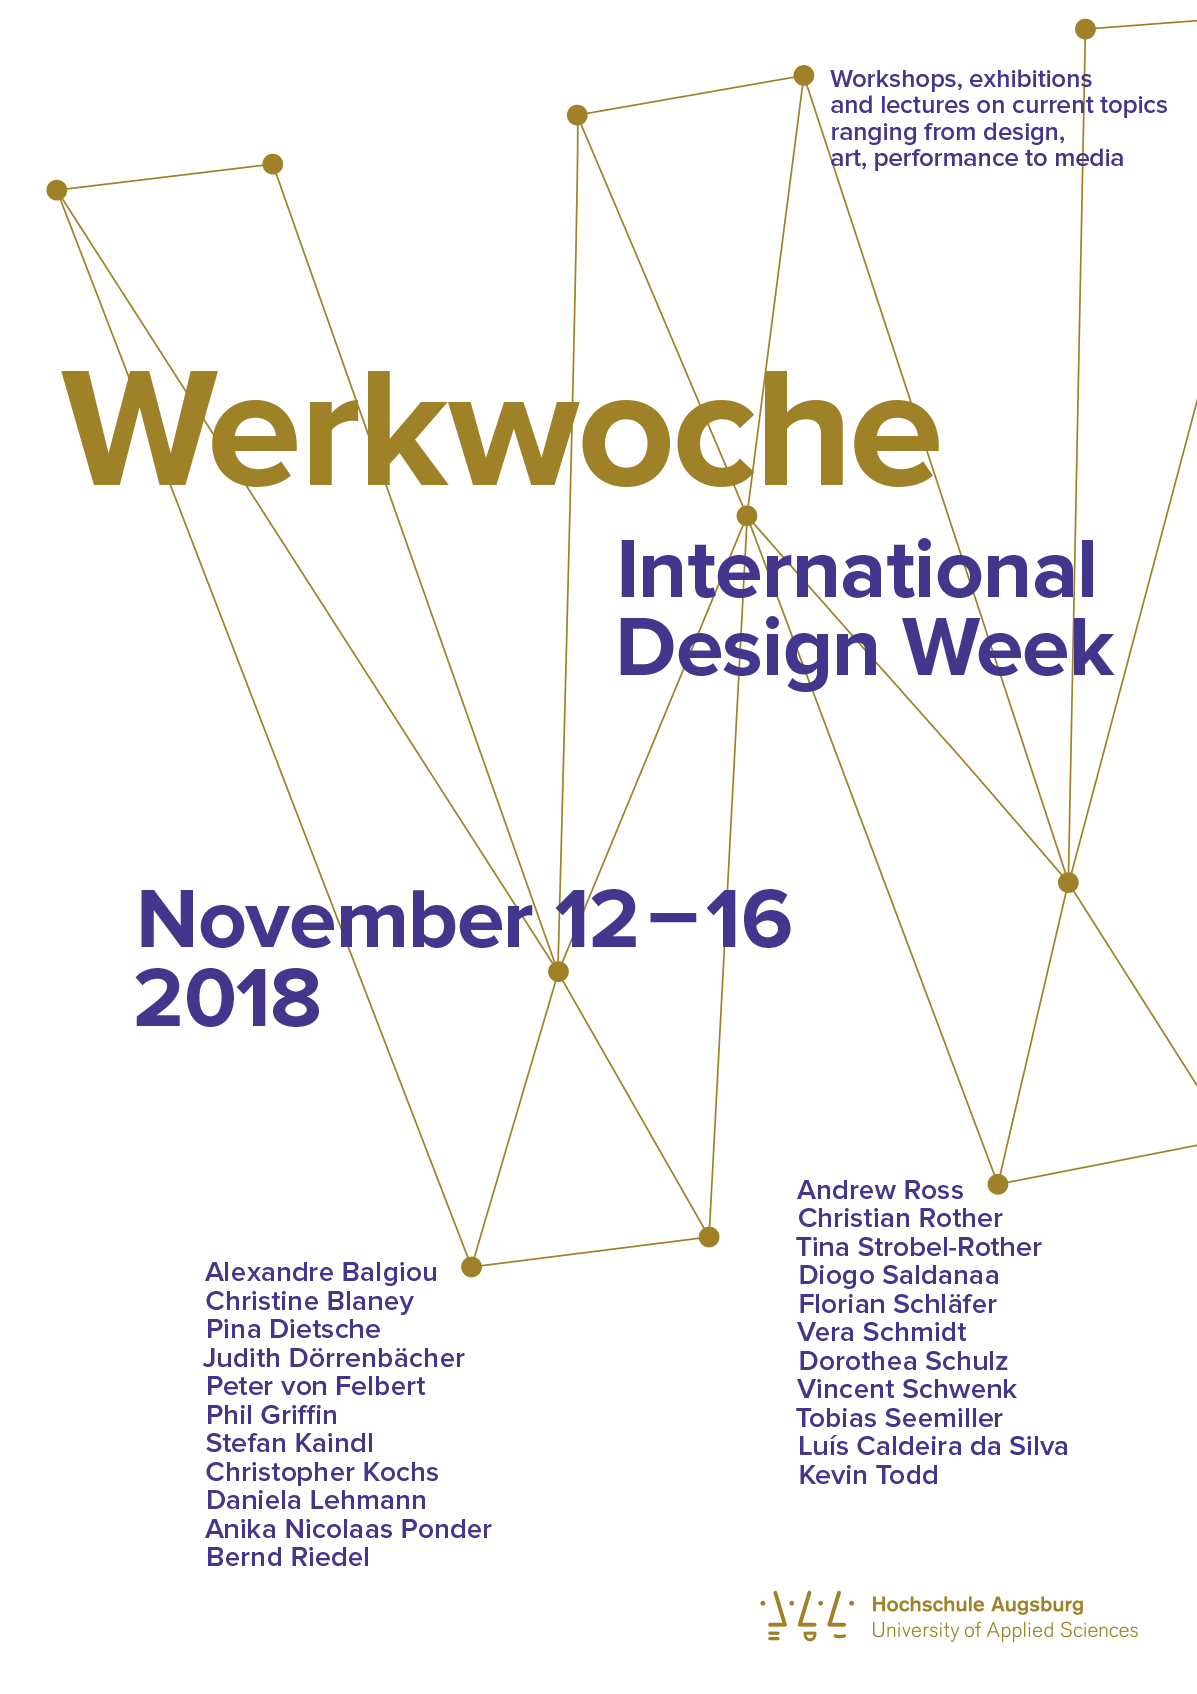 Werkwoche 2018 | International Design Week